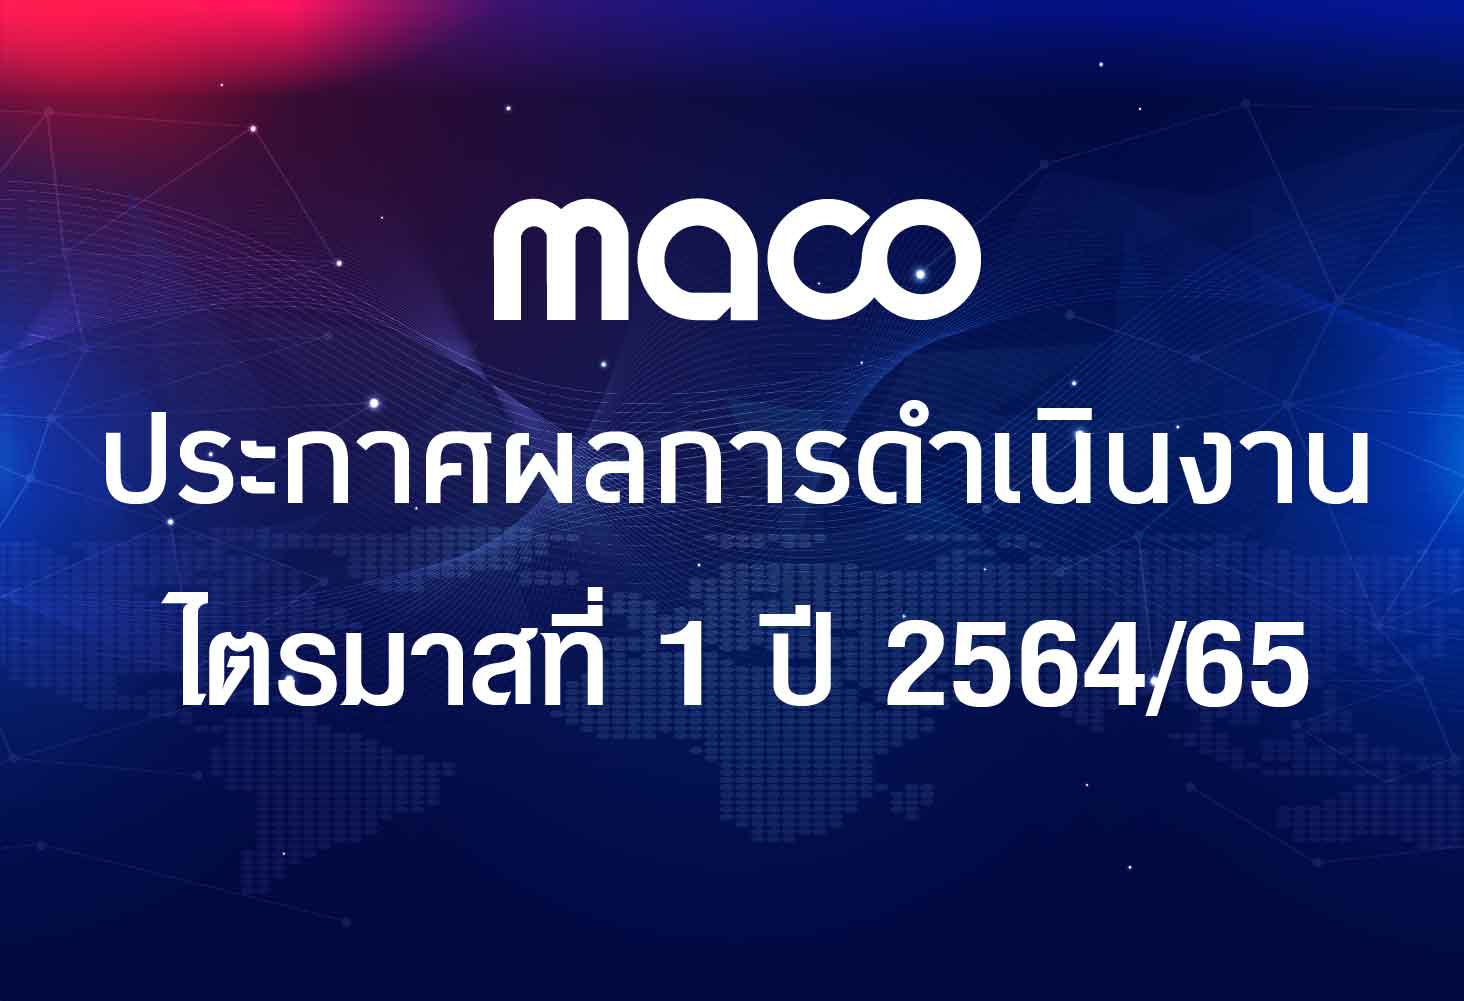 ​MACO เปิดงบไตรมาสแรกปี 2564/65 ส่งสัญญาณบวก ทำรายได้ 603 ล้านบาท พลิกมีอัตรากำไรสุทธิ 15.5%